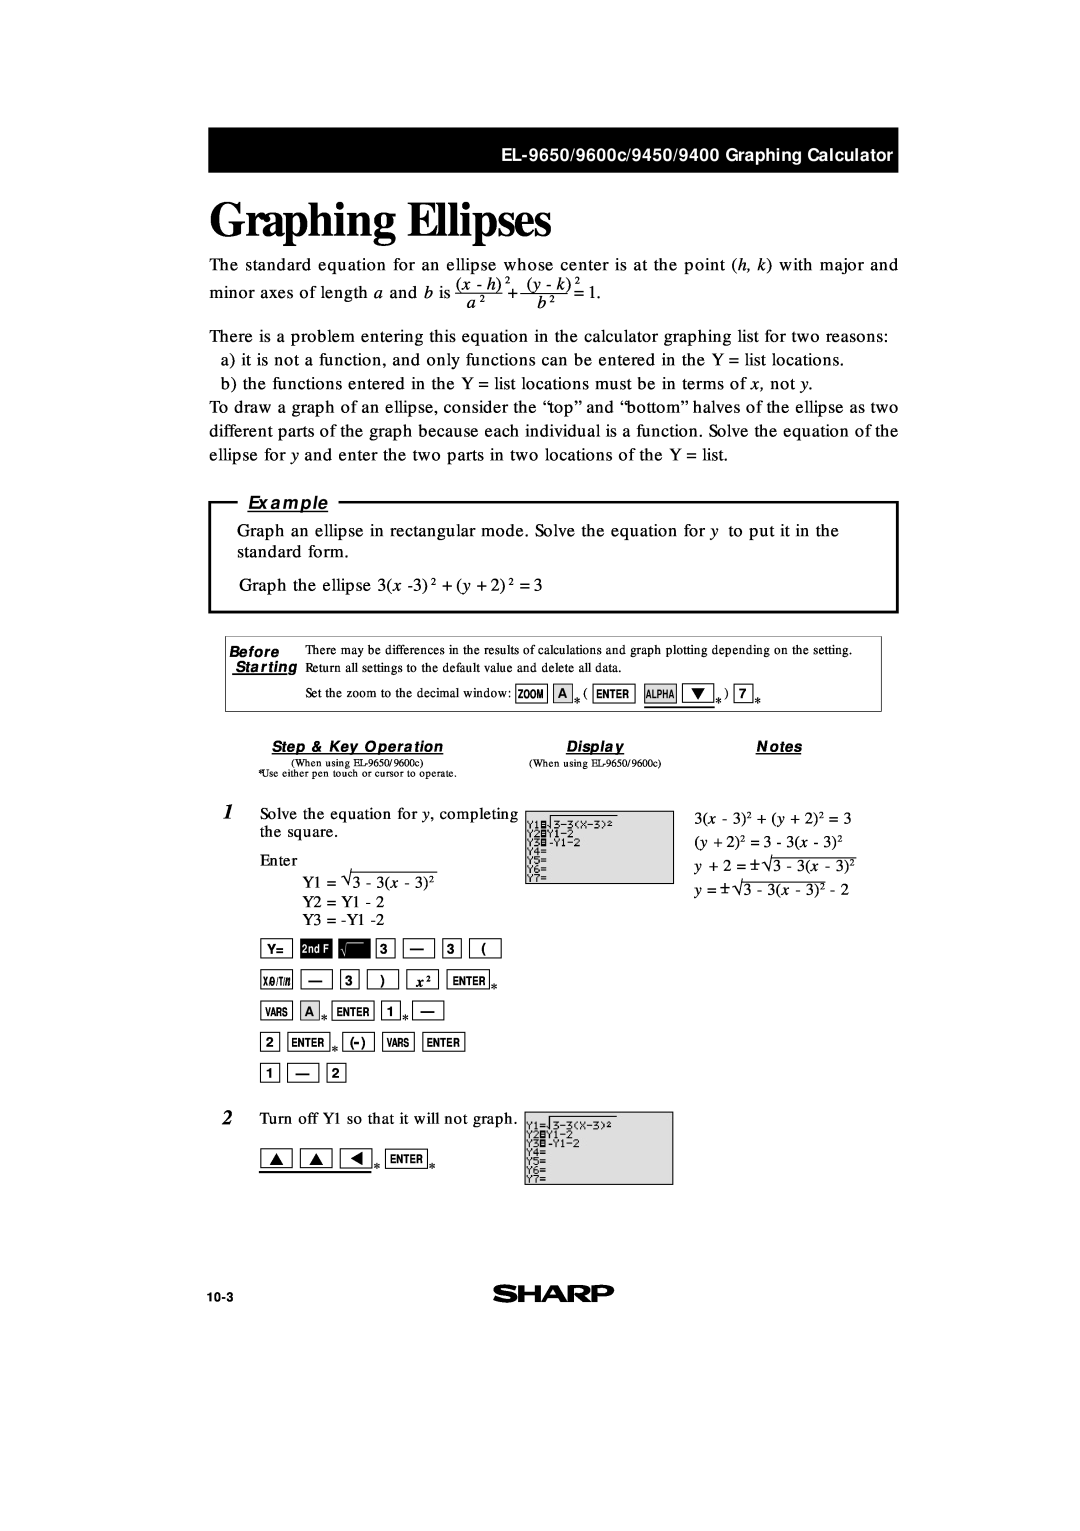 Sharp EL-9600c, EL-9400 manual Graphing Ellipses, EL-9650/9600c/9450/9400 Graphing Calculator, x - h, y - k, Example 